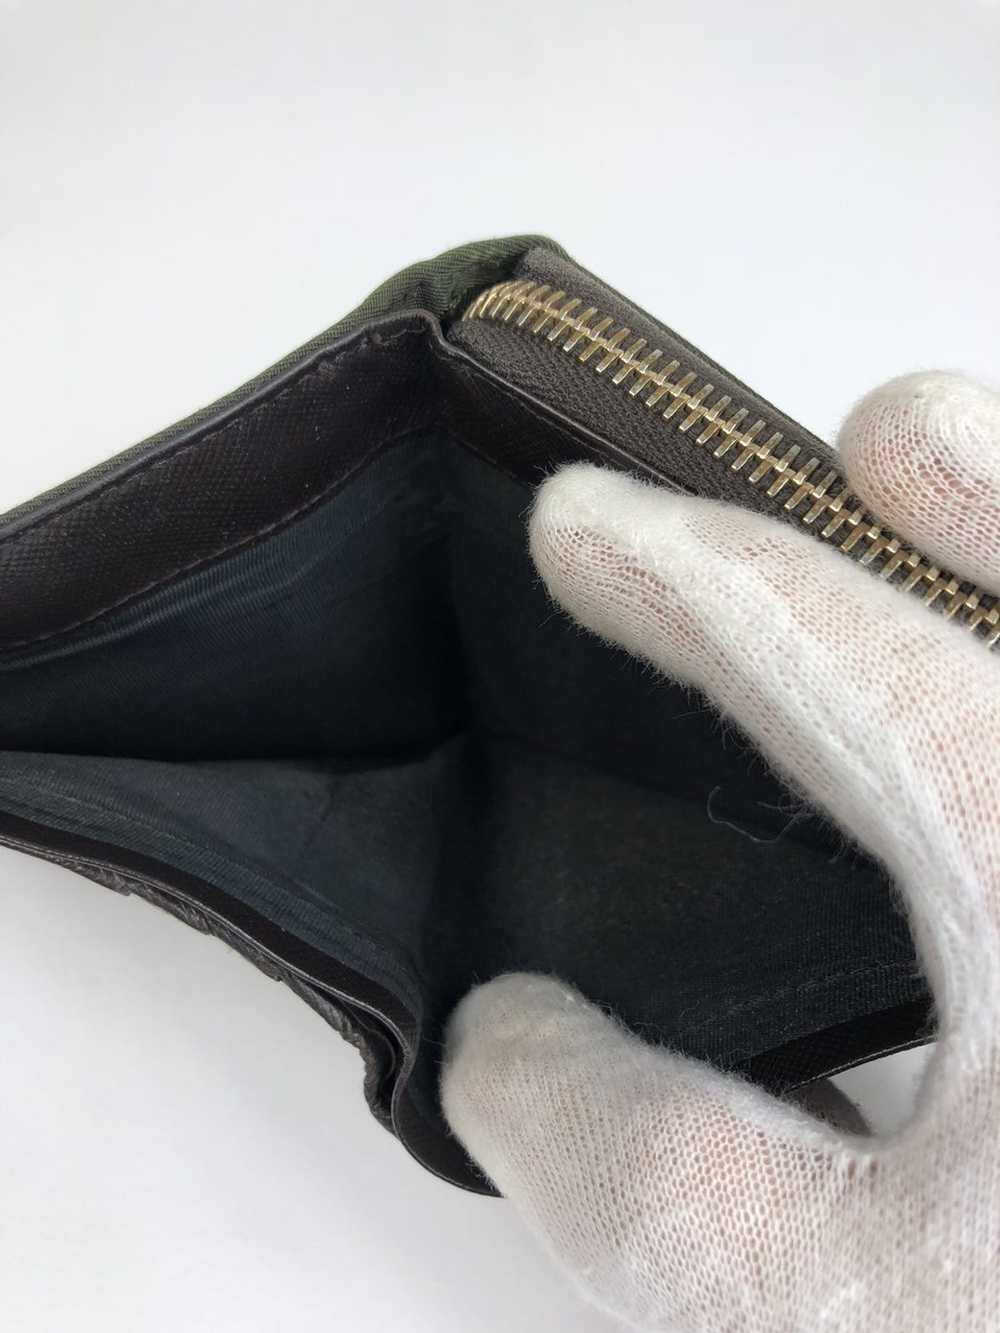 Prada Prada tessuto nylon zippy wallet - image 5